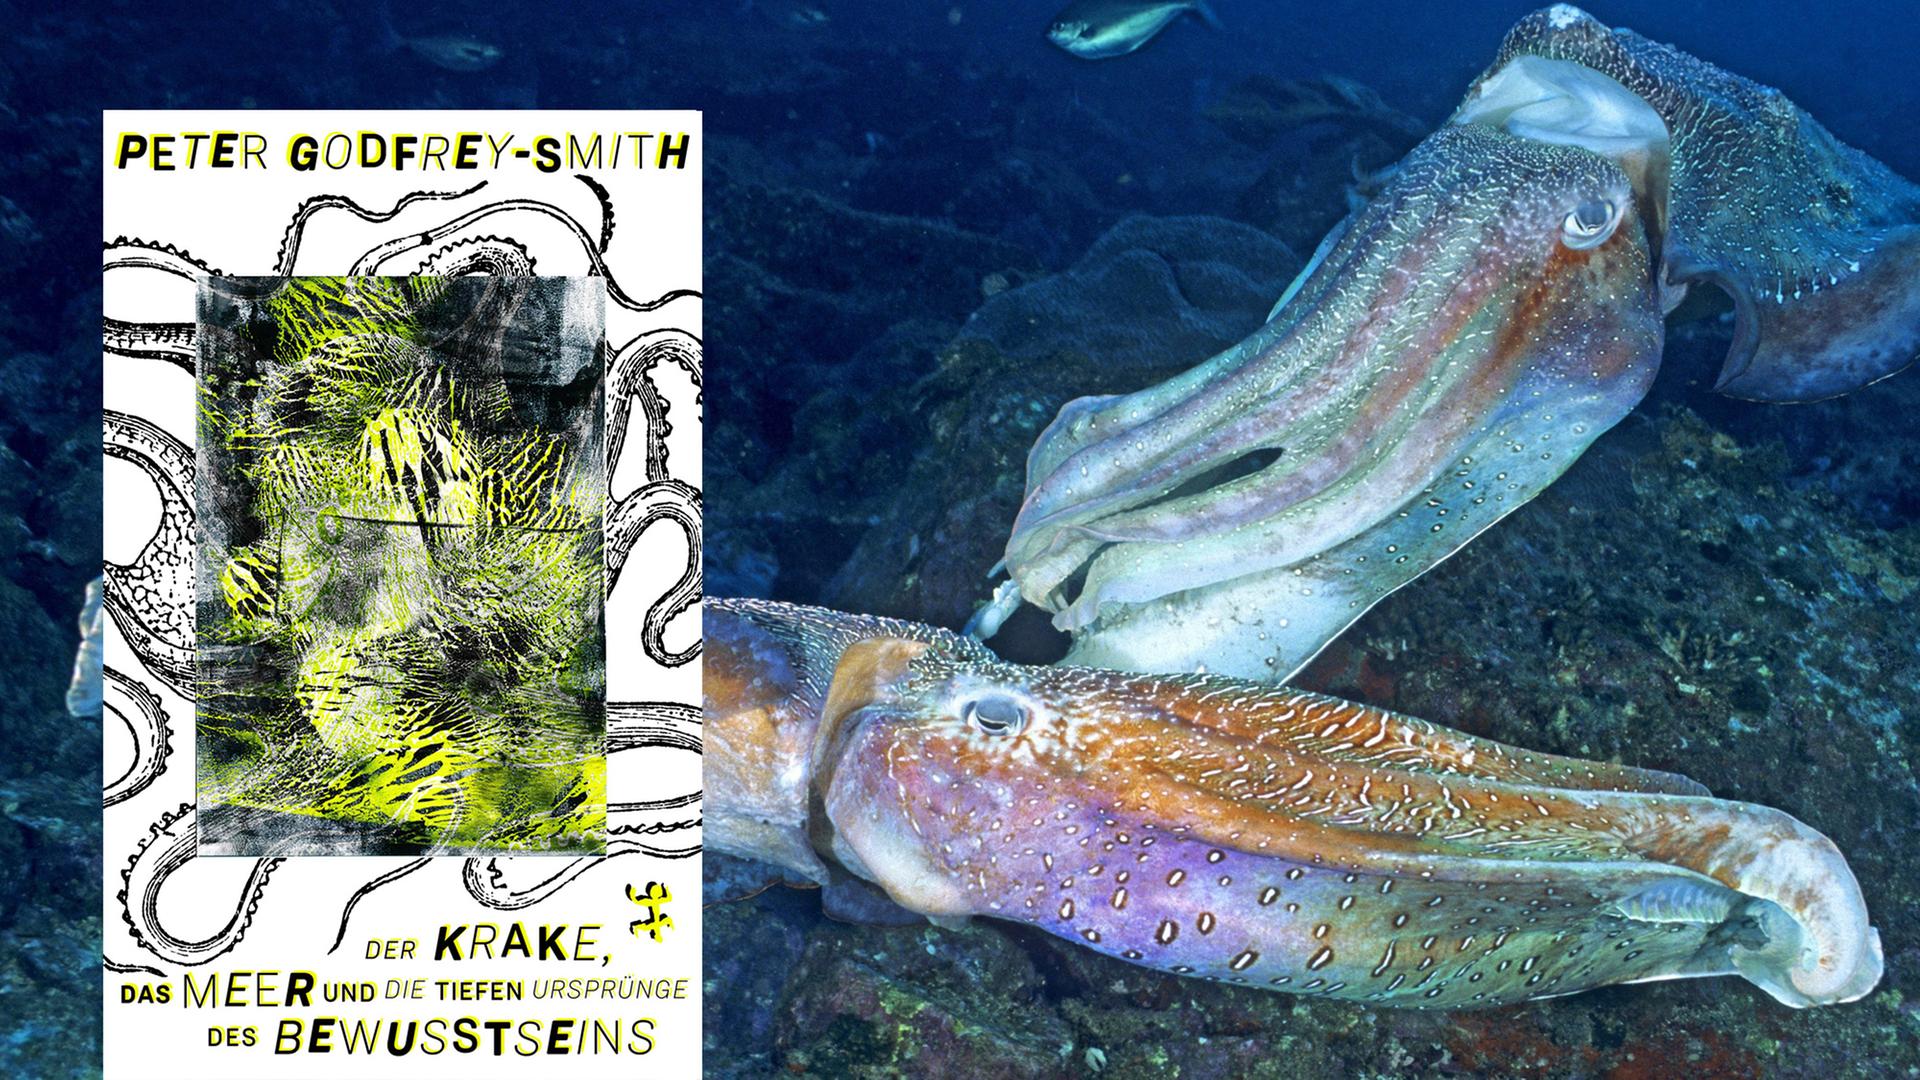 Cover von Peter Godfrey-Smiths Buch "Der Krake, das Meer und die tiefen Ursprünge des Bewusstseins". Im Hintergrund sieht man ein Foto von zwei männlichen Riesensepia, die um ein Revier konkurrieren und schnell wechselnde, pulsierende Farbmuster zeigen.